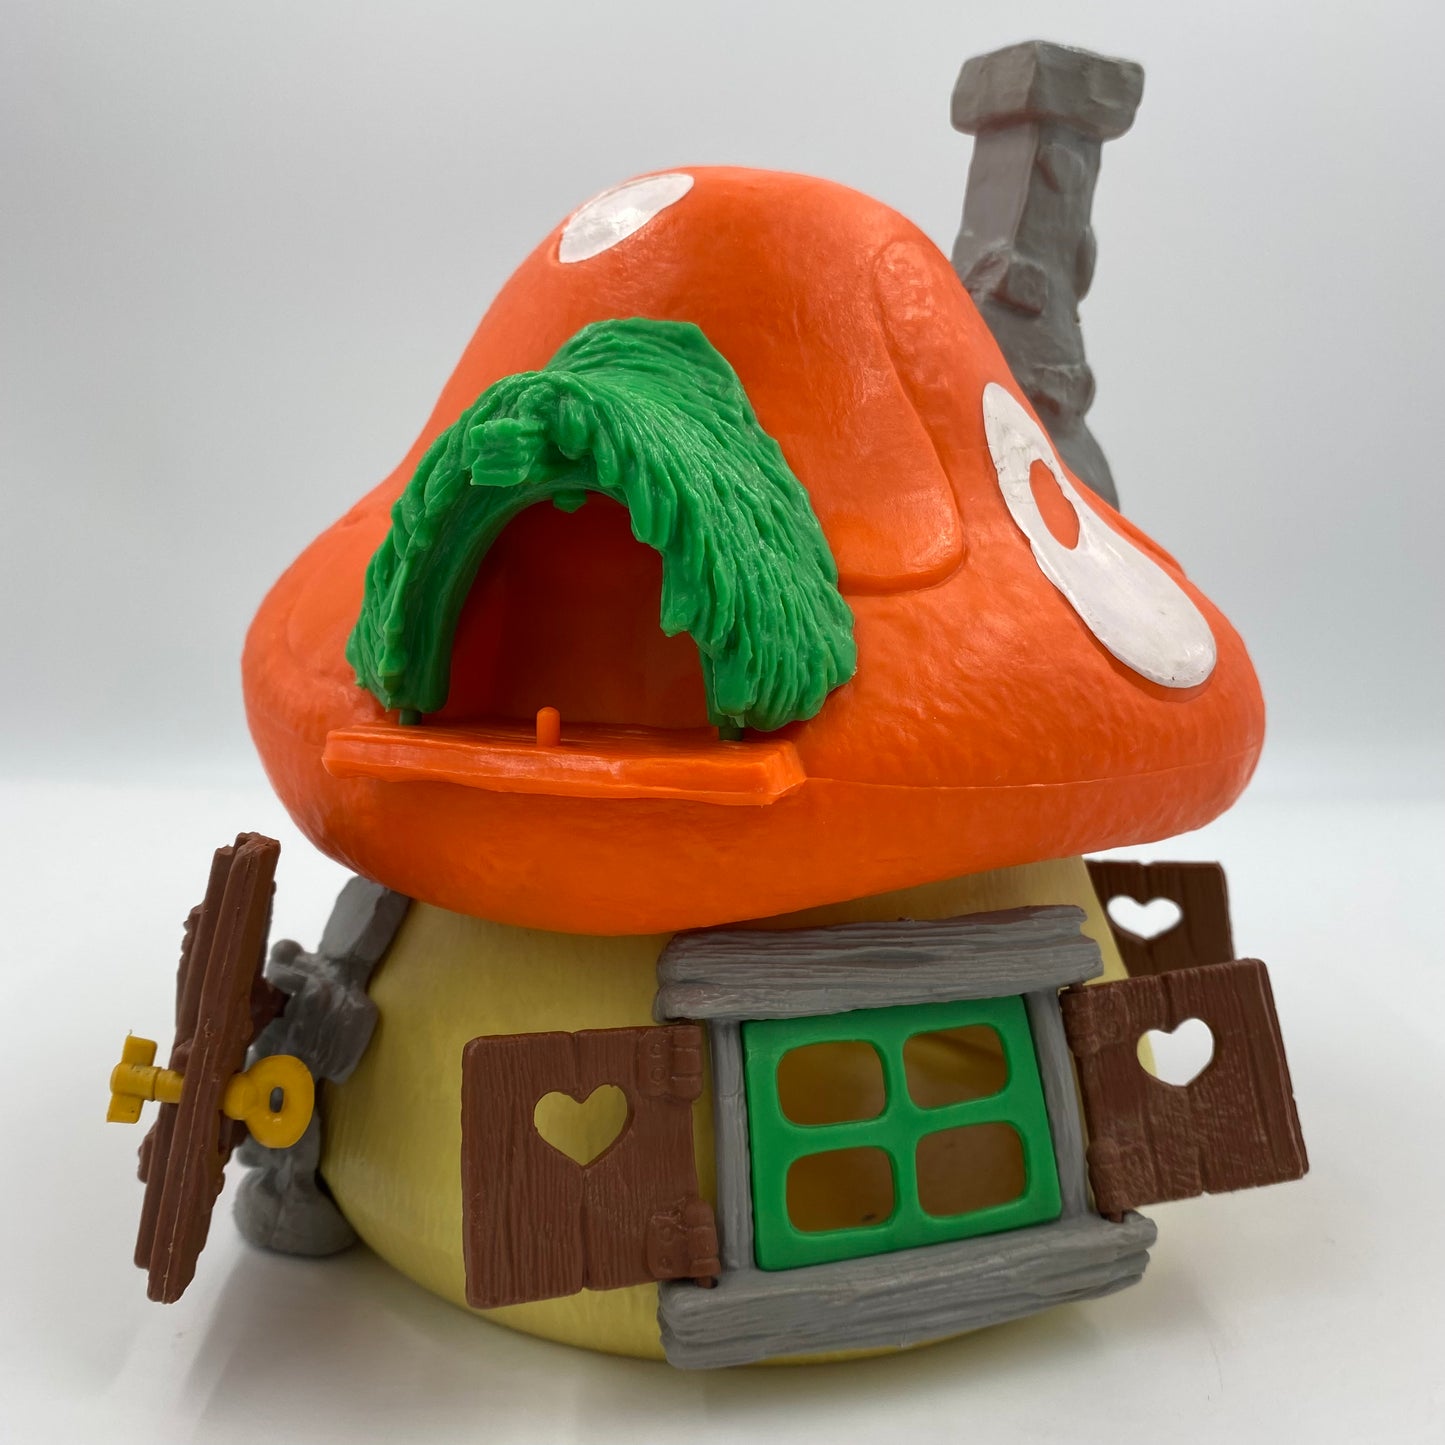 Smurfs: The Smurfs Mushroom House 40001 (1976) Schleich